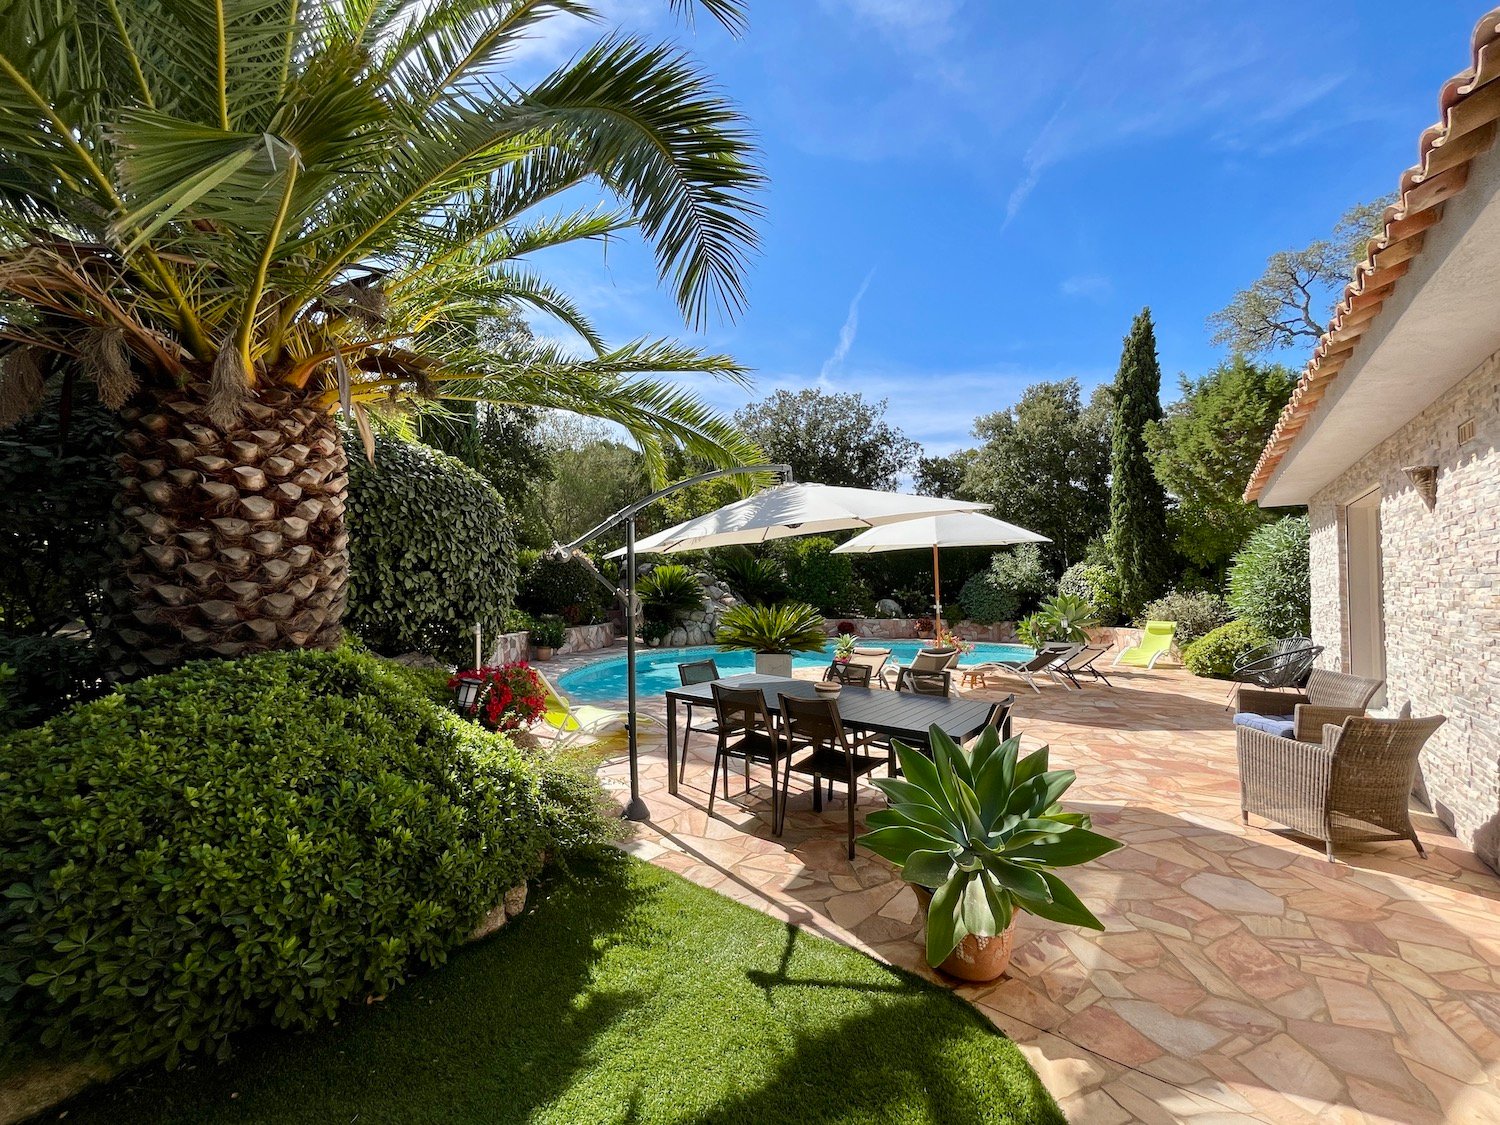 Location villa vacances domaine de Cala Rossa Corse du sud luxe contemporaine proche plage 5 chambres piscine jardin Porto-Vecchio